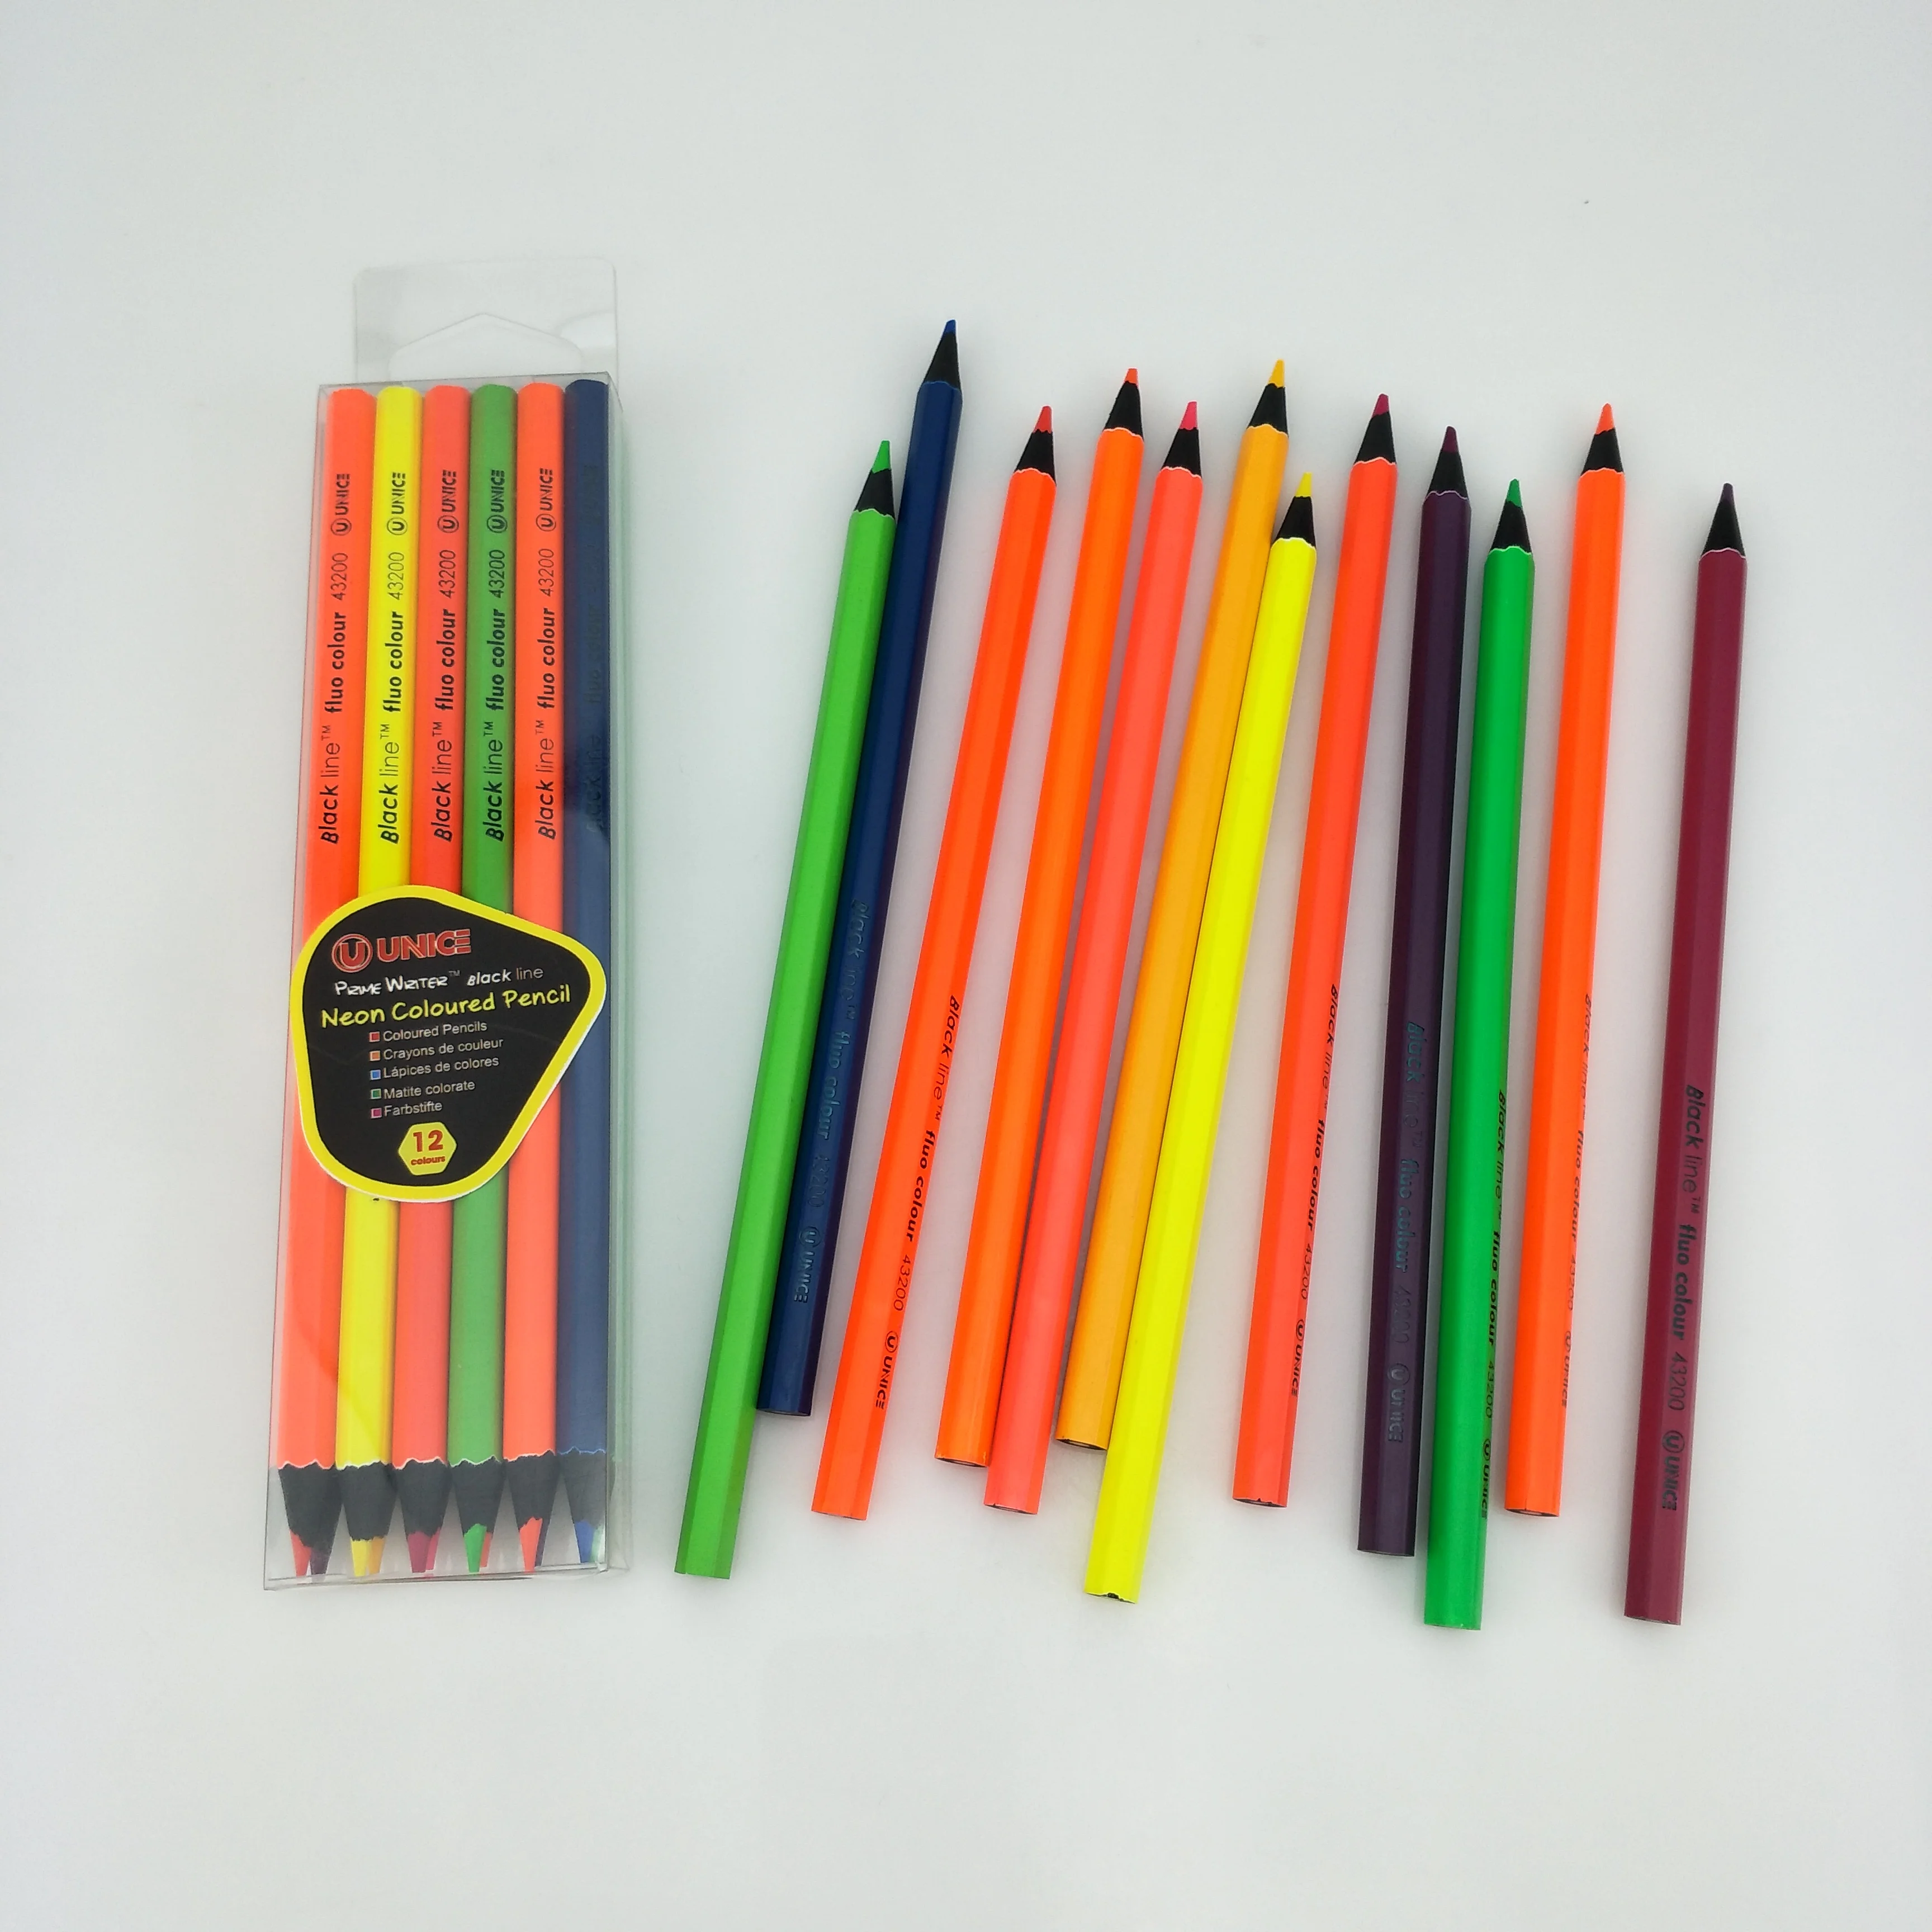 鉛筆に印刷されたカスタムデザイン Oemパッケージネオン色鉛筆 ブラックウッド Buy Neon Colored Pencils Black Wood Pencil Custom Pencils Product On Alibaba Com